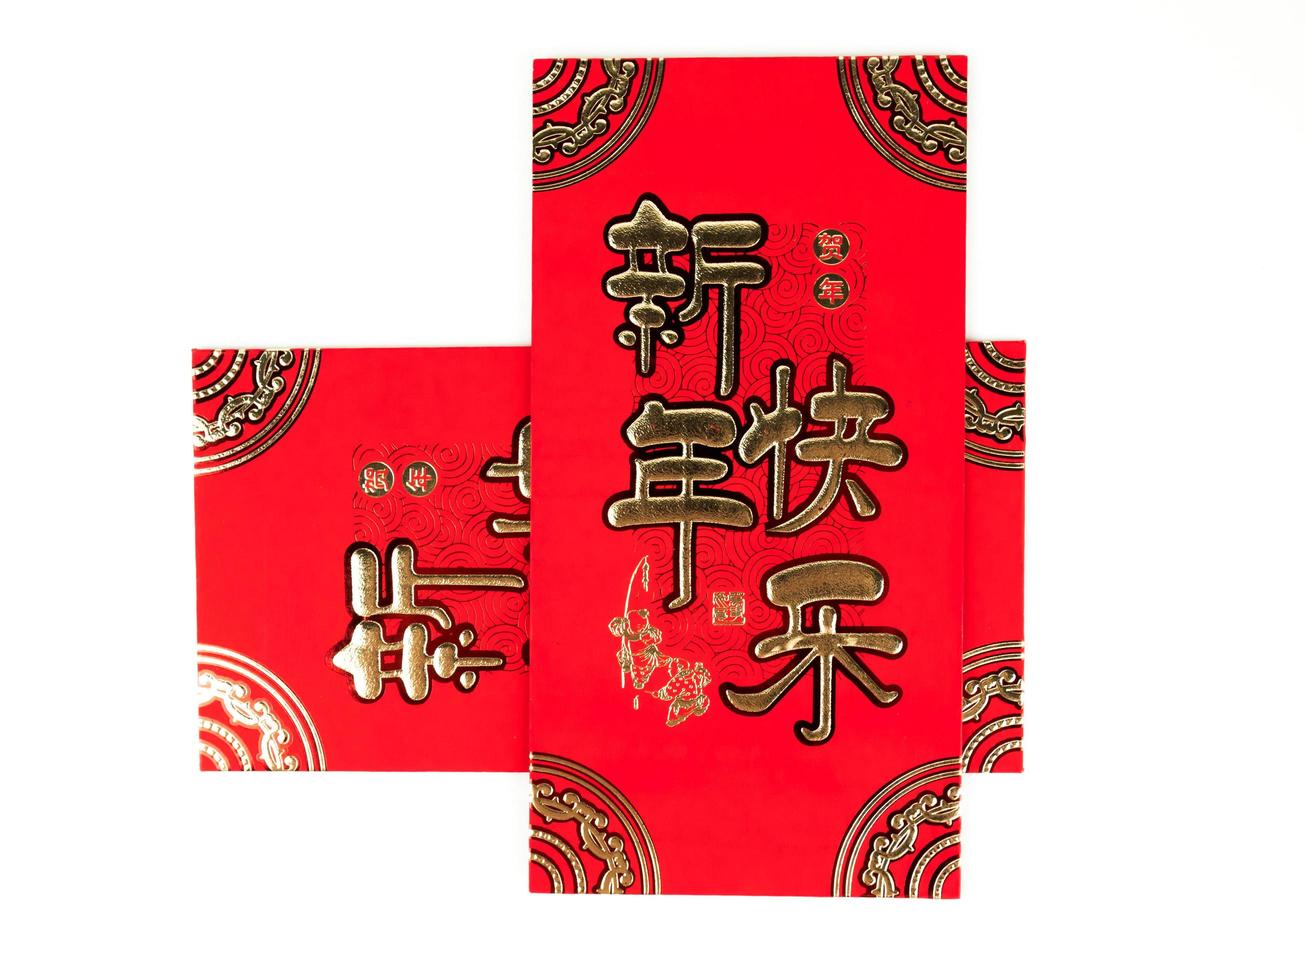 rode envelop geïsoleerd op een witte achtergrond voor cadeau chinees nieuwjaar. Chinese tekst op envelop betekent gelukkig chinees nieuwjaar foto